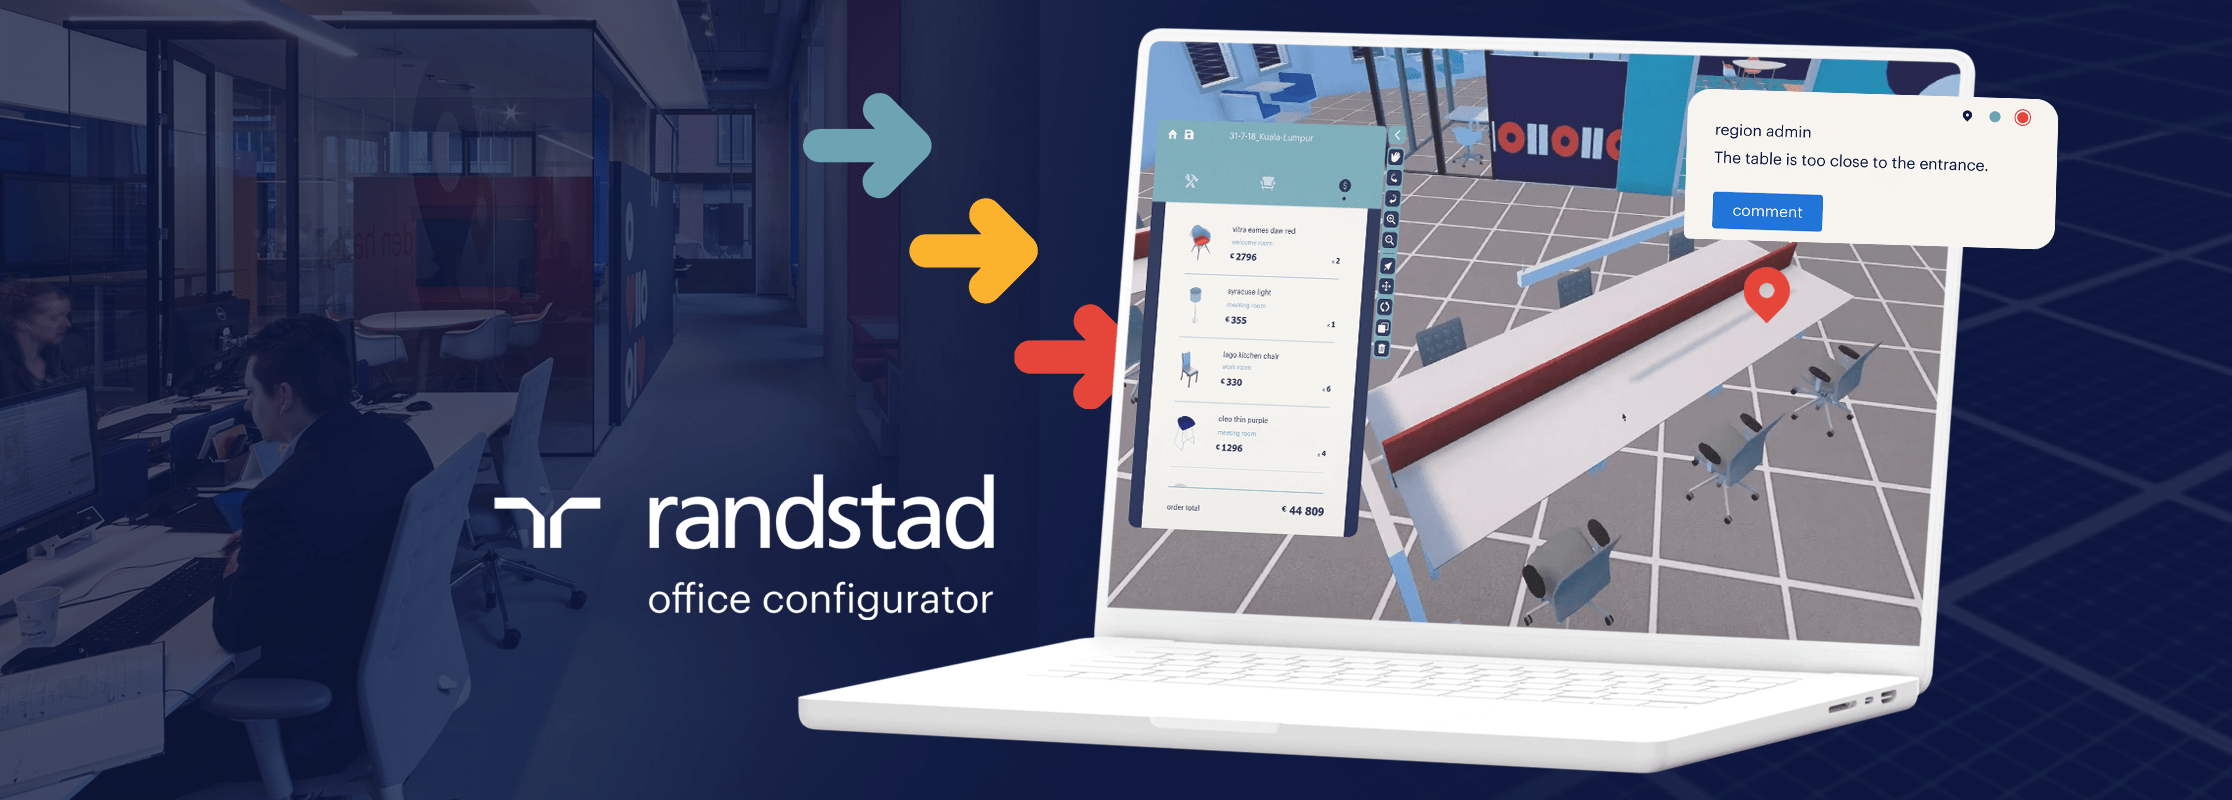 Randstad Configurator: global Human Forward